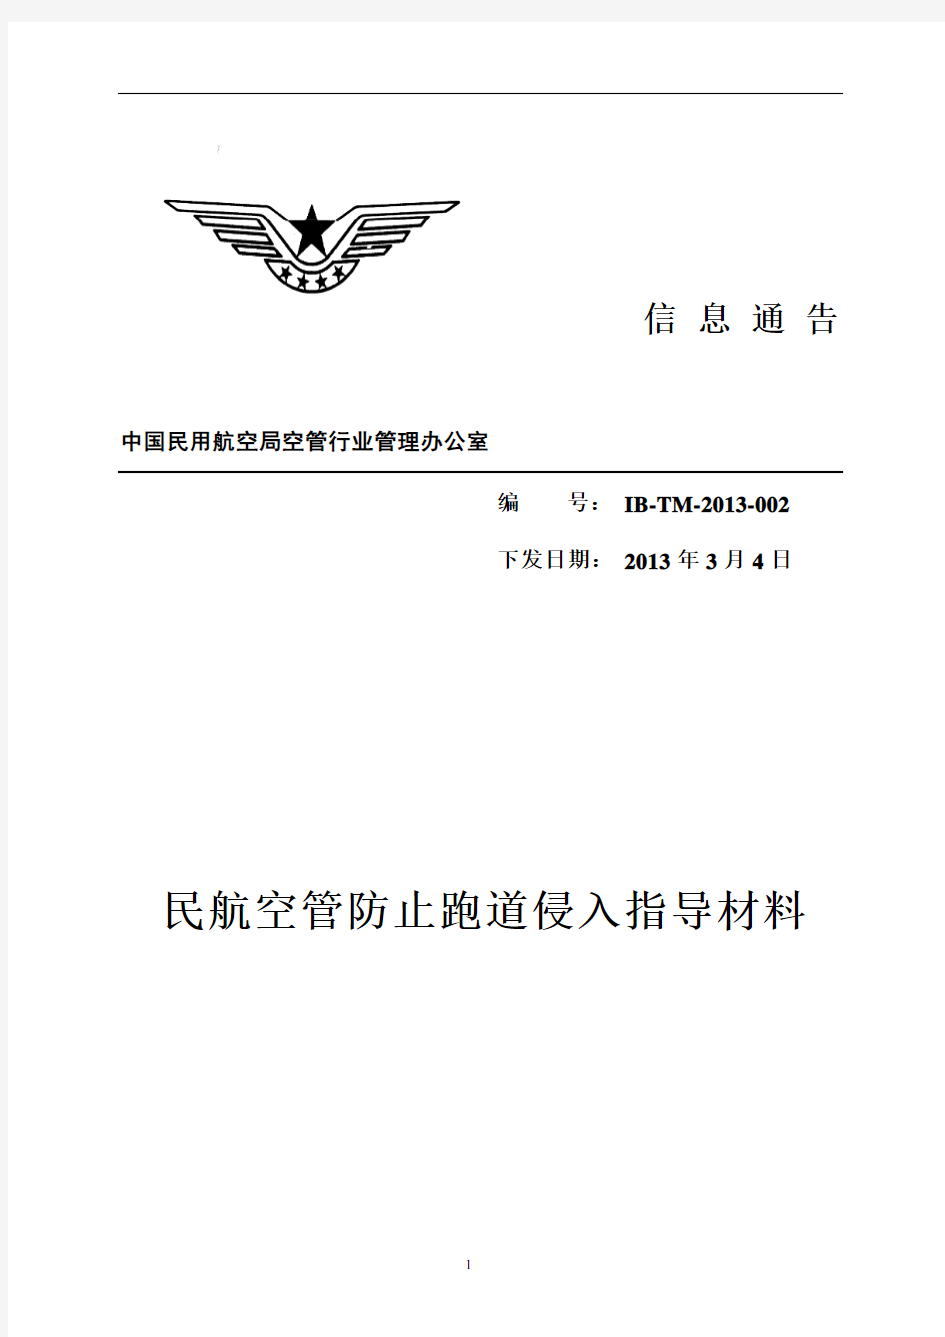 民航空管防止跑道侵入指导材料-中国民用航空局